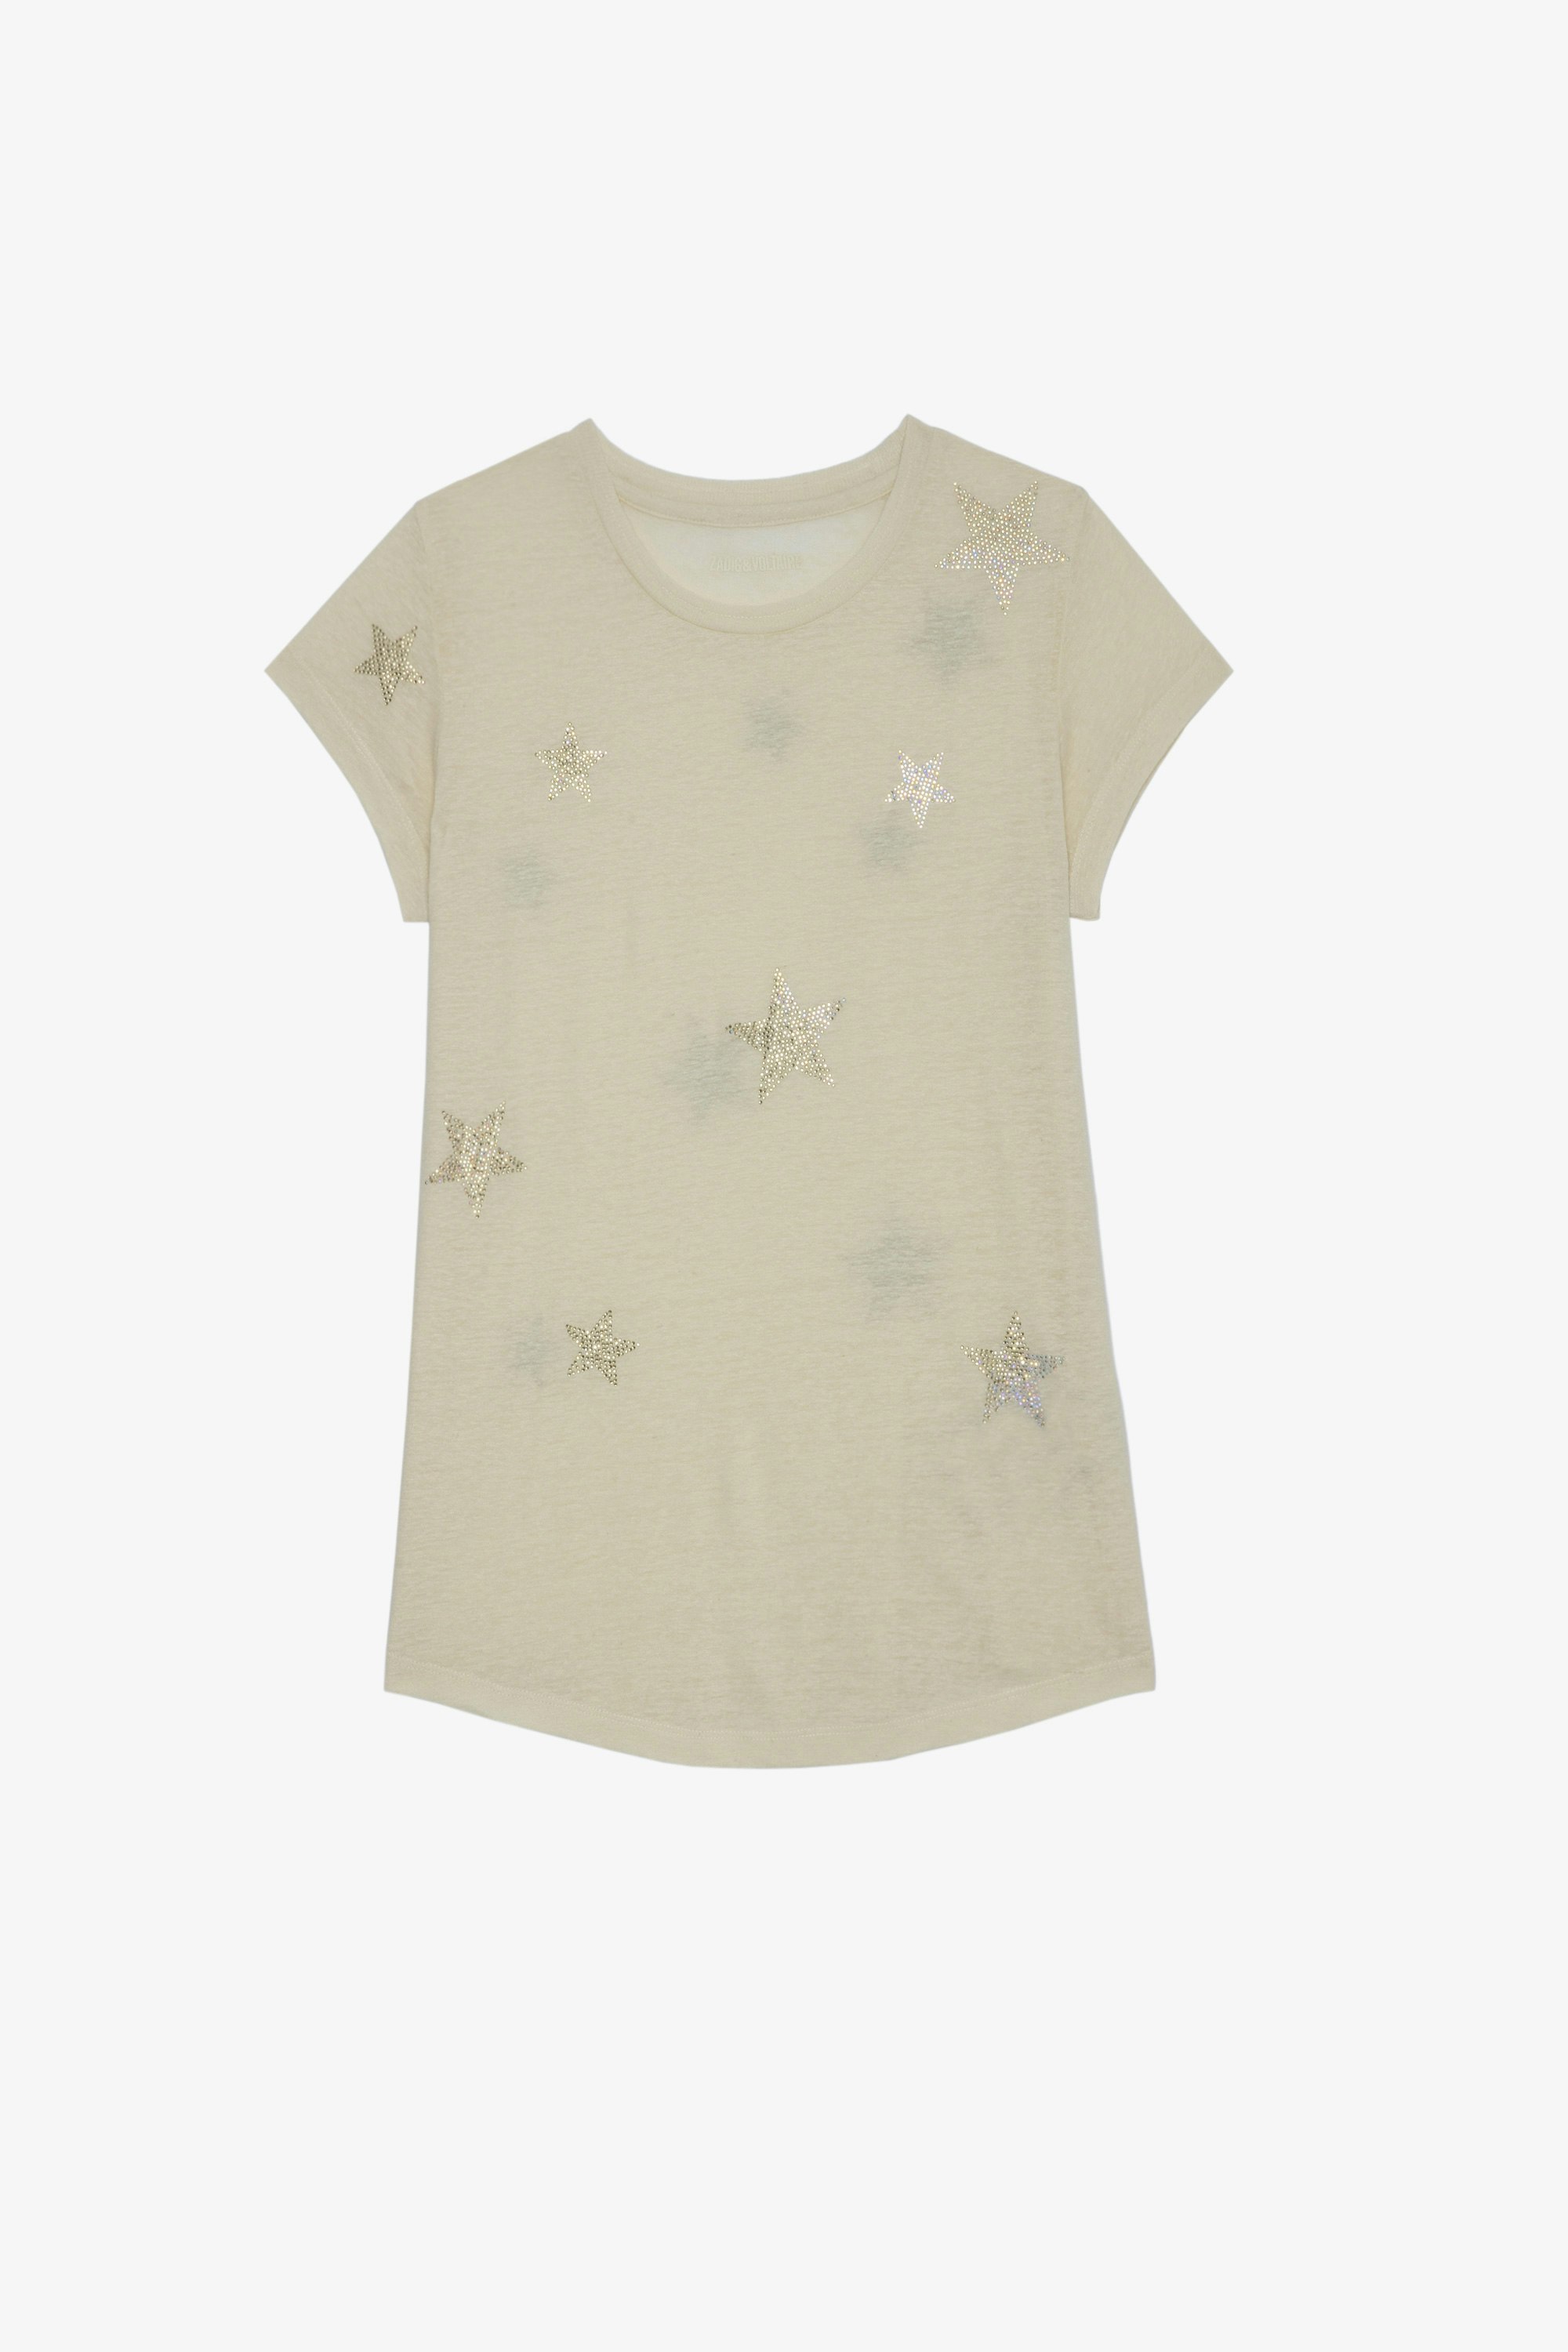 Camiseta Skinny Stars Strass Camiseta de algodón beige de manga corta con diseño de alas ZV en la espalda para mujer